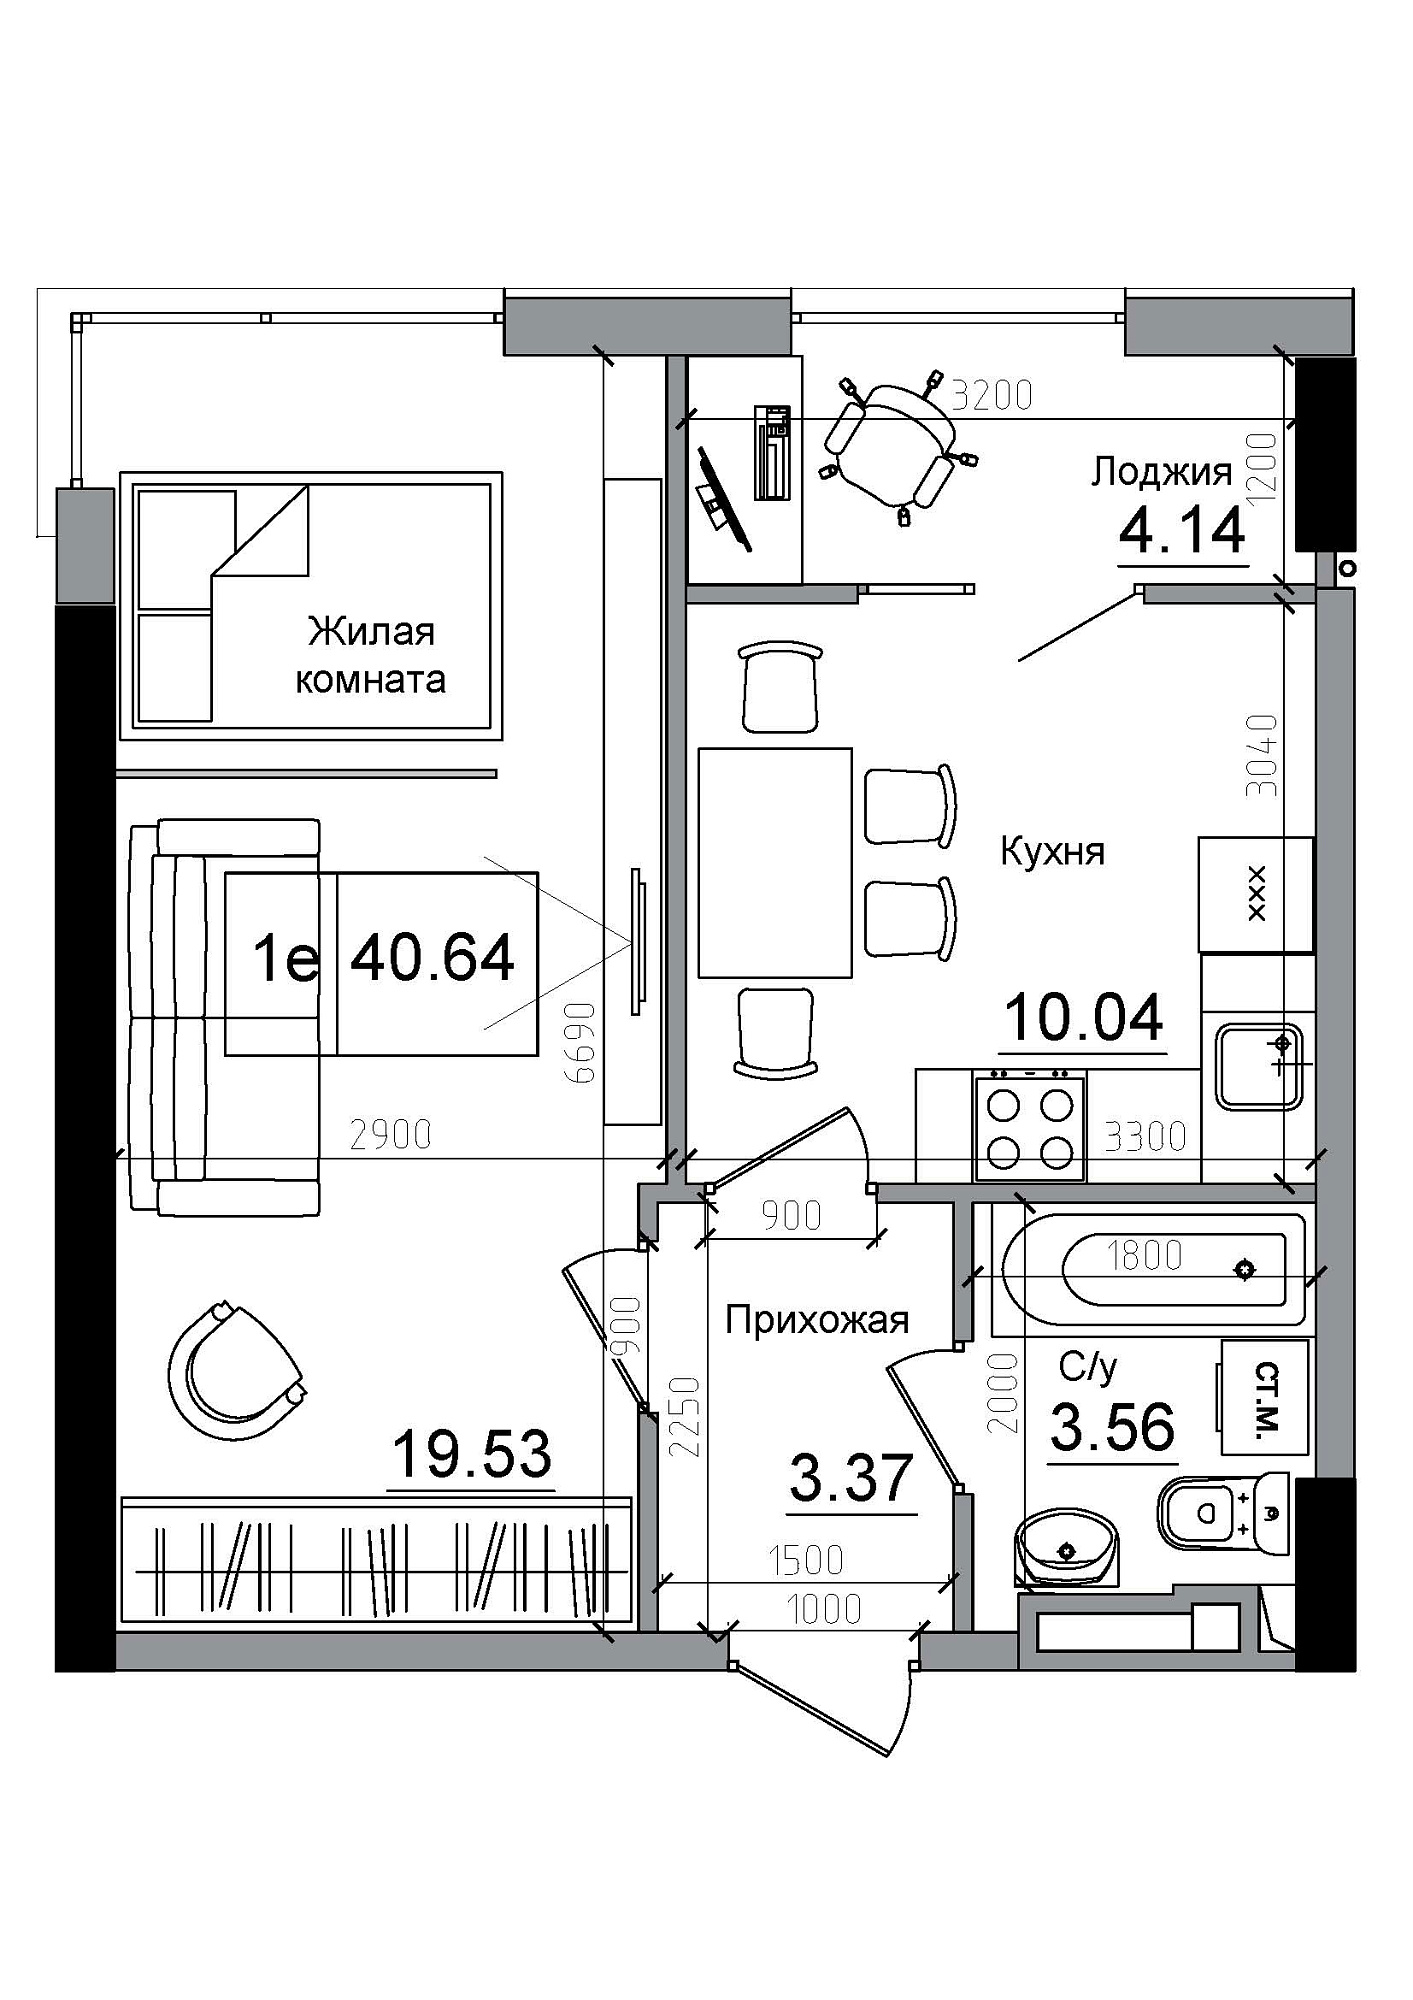 Планировка 1-к квартира площей 40.64м2, AB-12-11/00006.